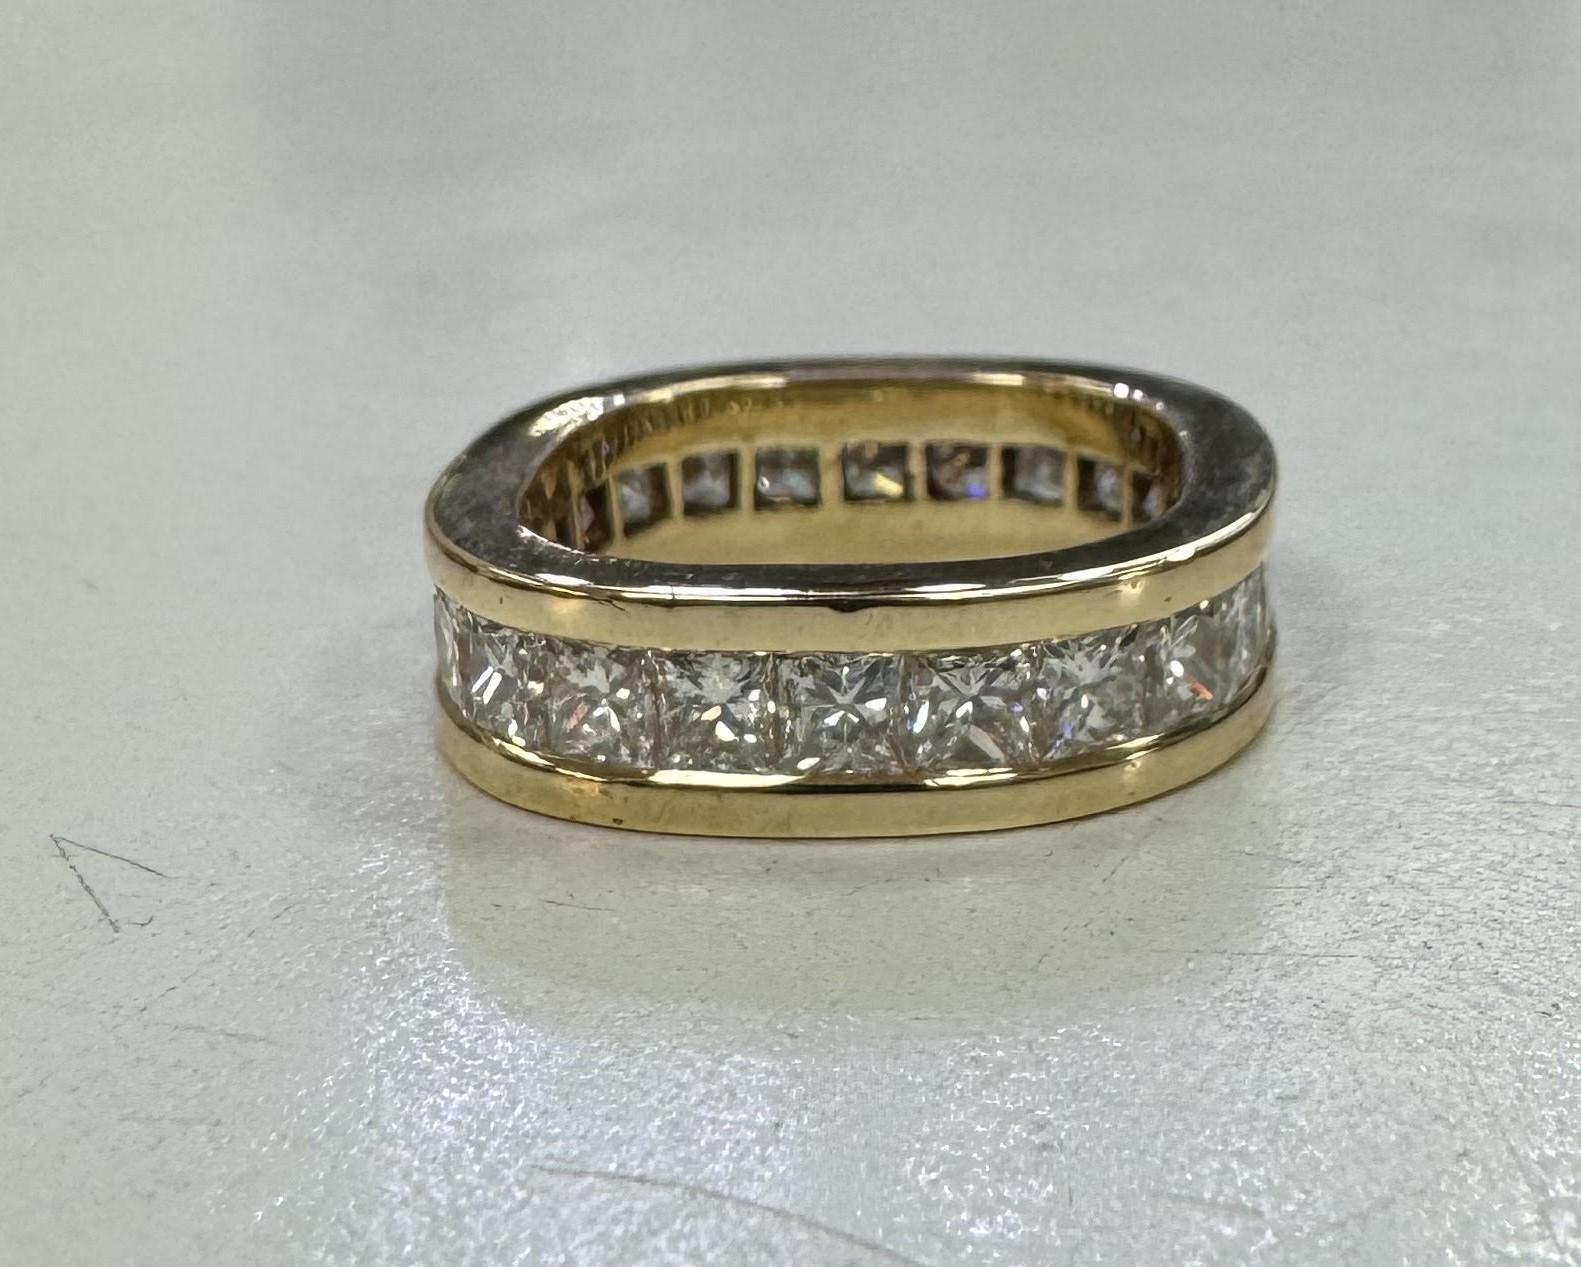 14k Gelbgold Diamant Princess Cut Eternity Ring 3,50 Karat mit 24 Princess Cut Diamanten von sehr guter Qualität mit einem Gewicht von 3,50cts.
Diamanten: 24 runde Einzelschliffe 
Farbe : F
Klarheit: VS
Gewicht: 3,50cts
Metall: 14k Weißgold
Gewicht: